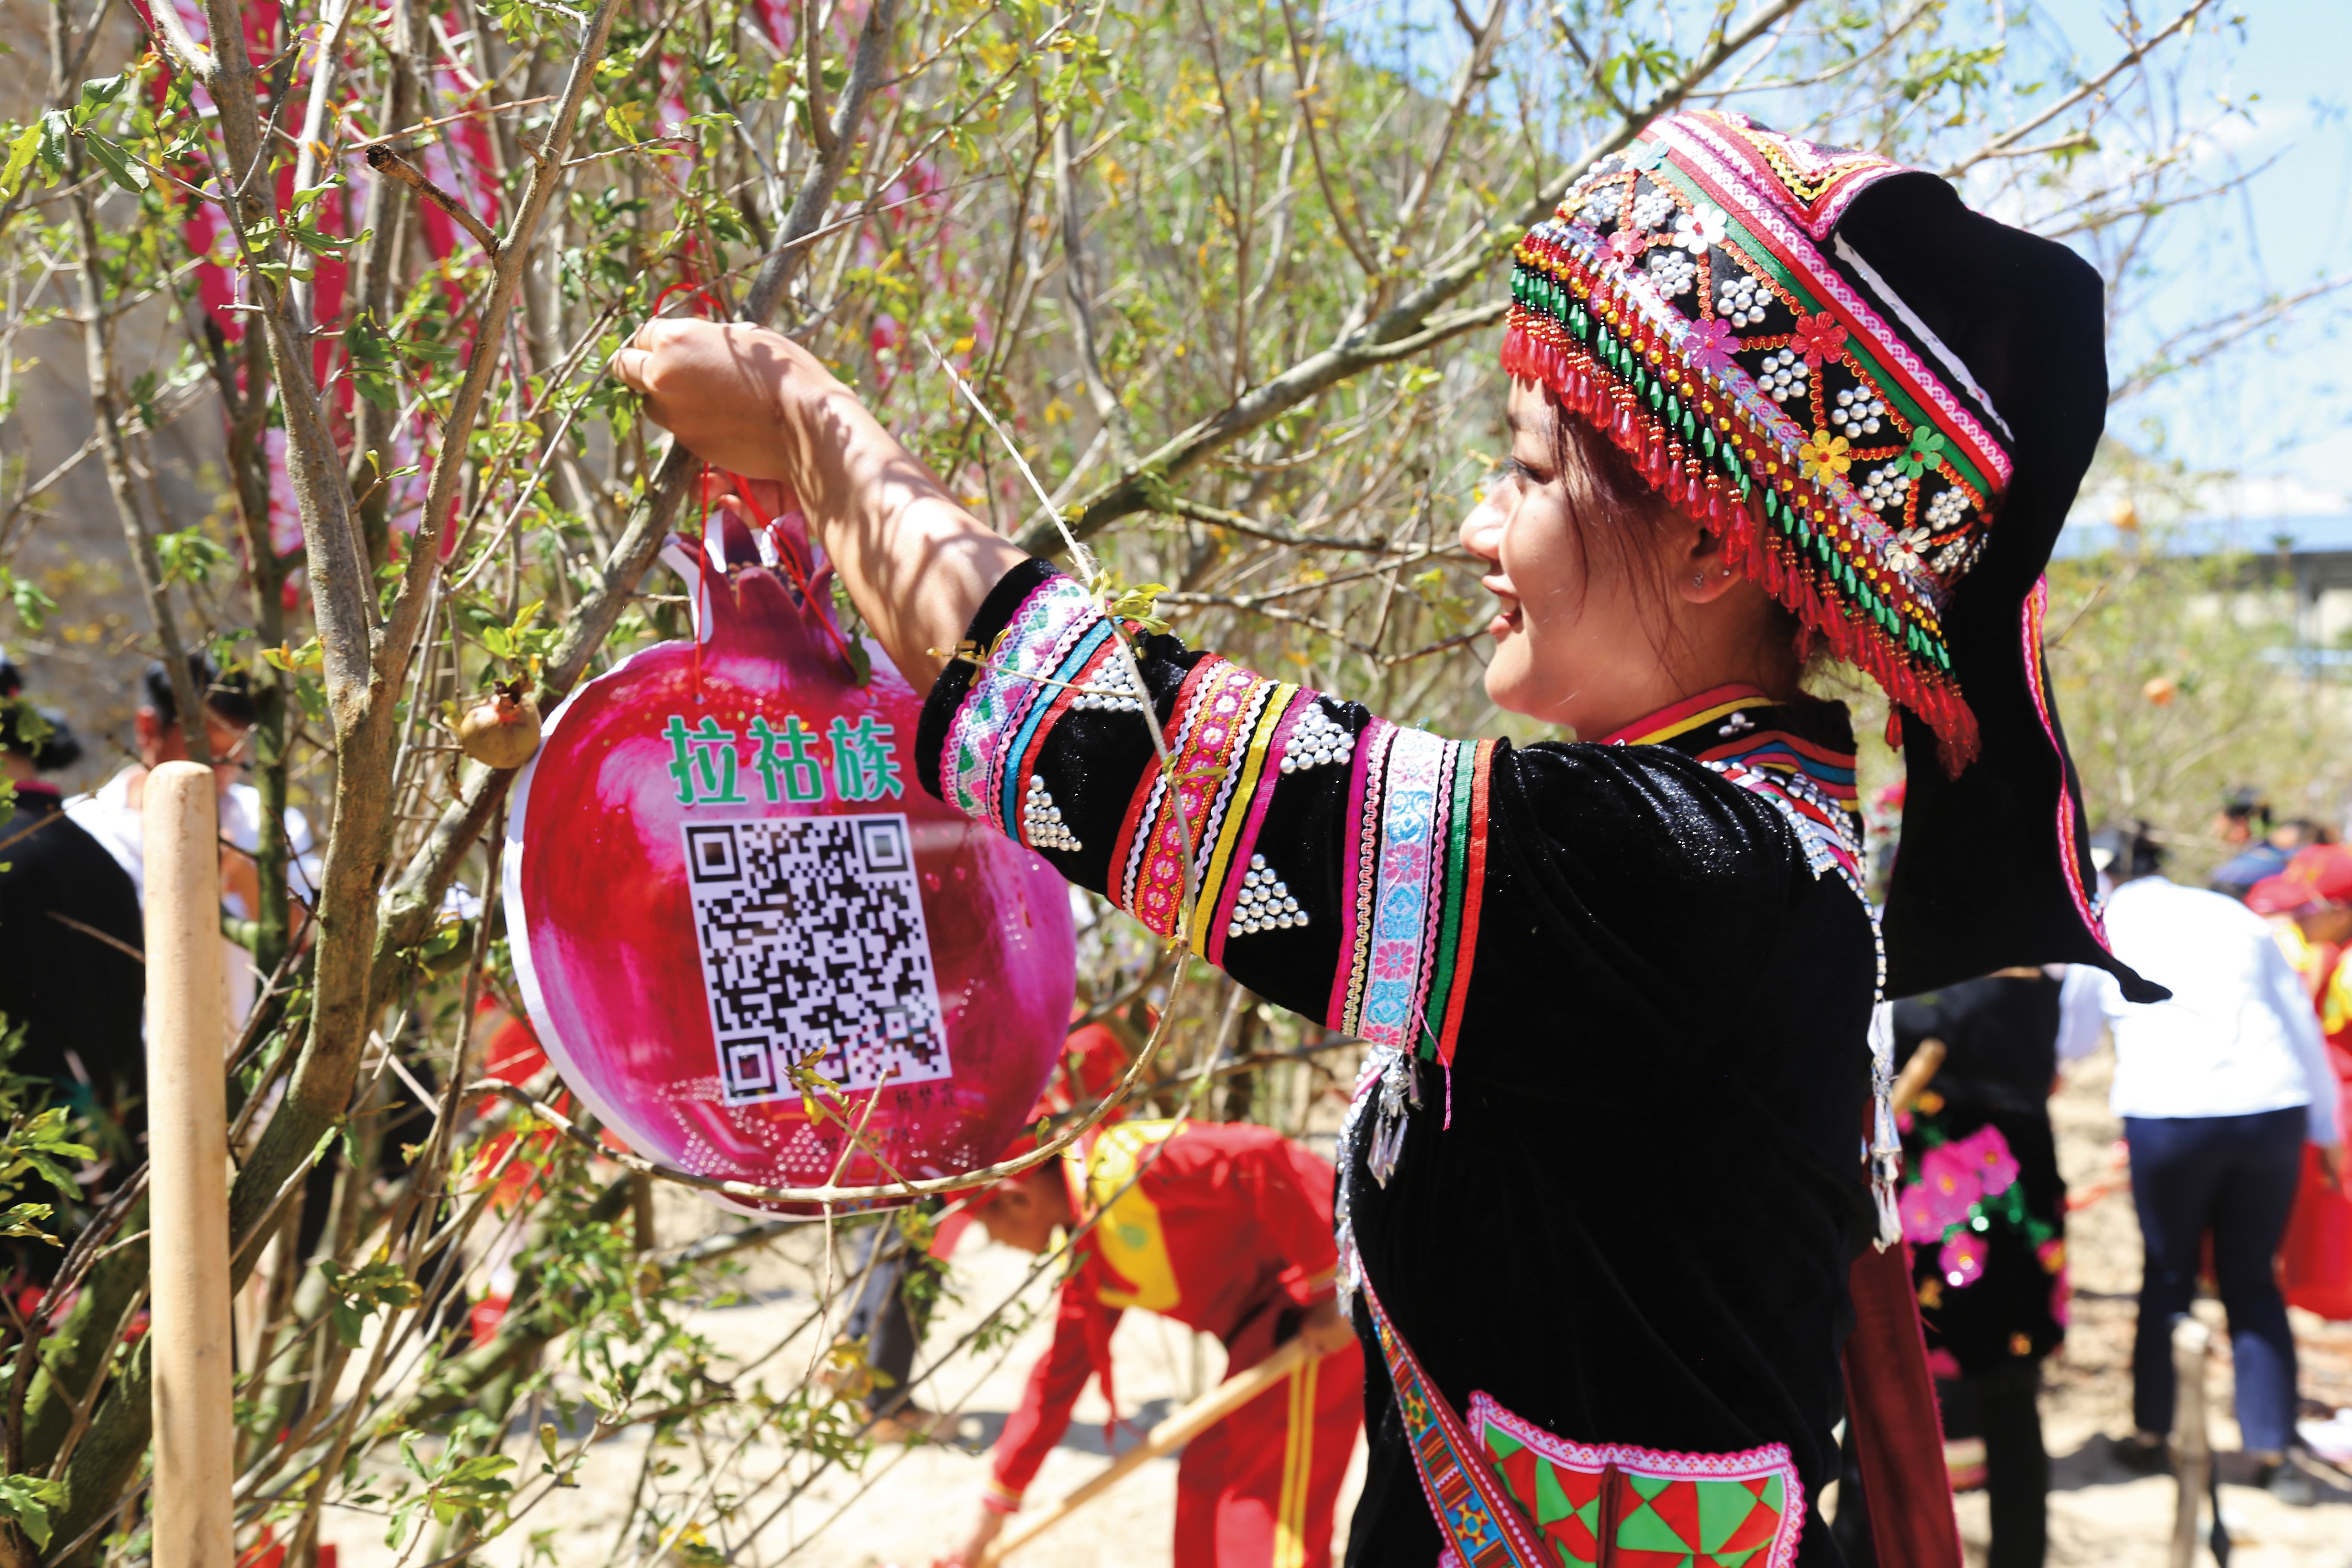 周海鸥-拉祜族代表将本民族简介二维码石榴牌挂在种植好的石榴树上.jpg